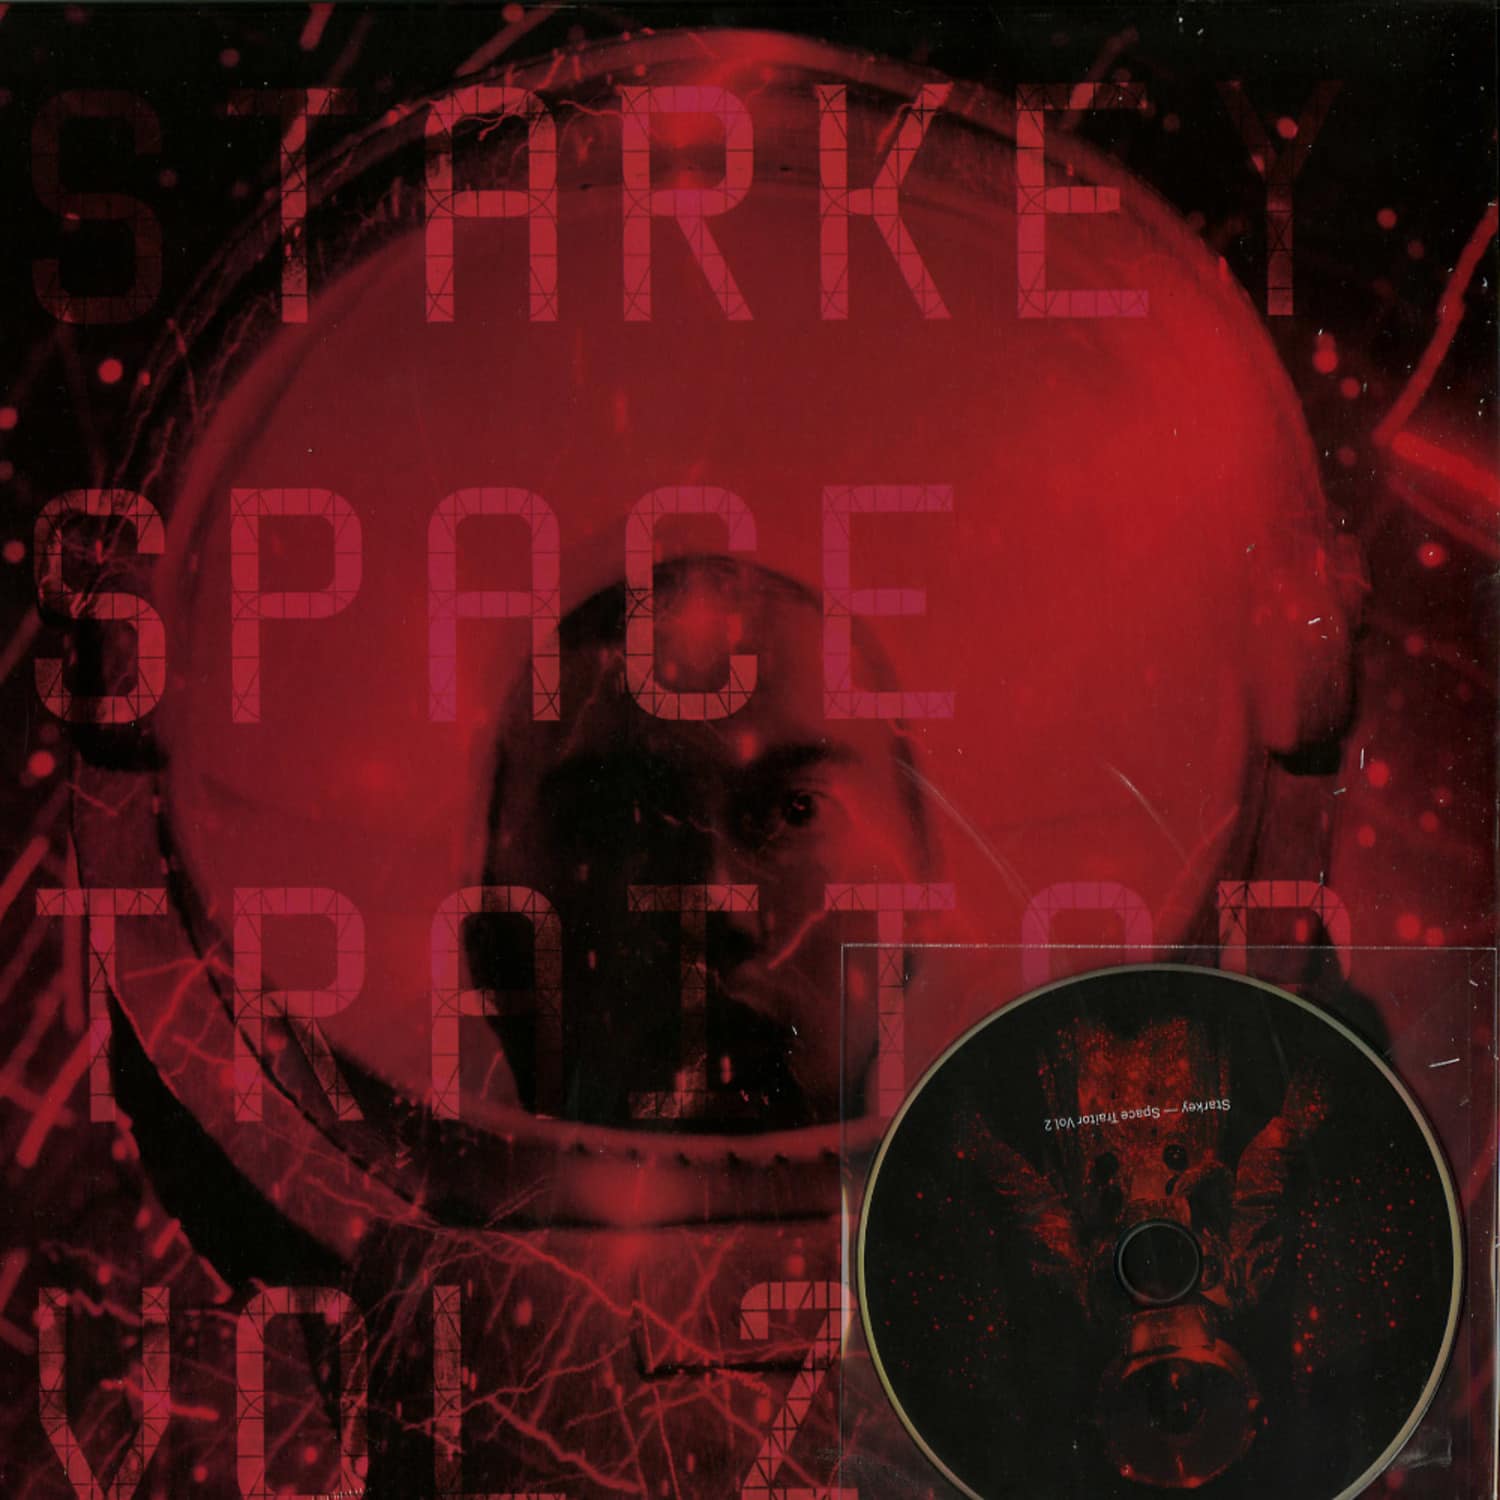 Starkey - SPACE TRAITOR VOLUME 2 EP / 